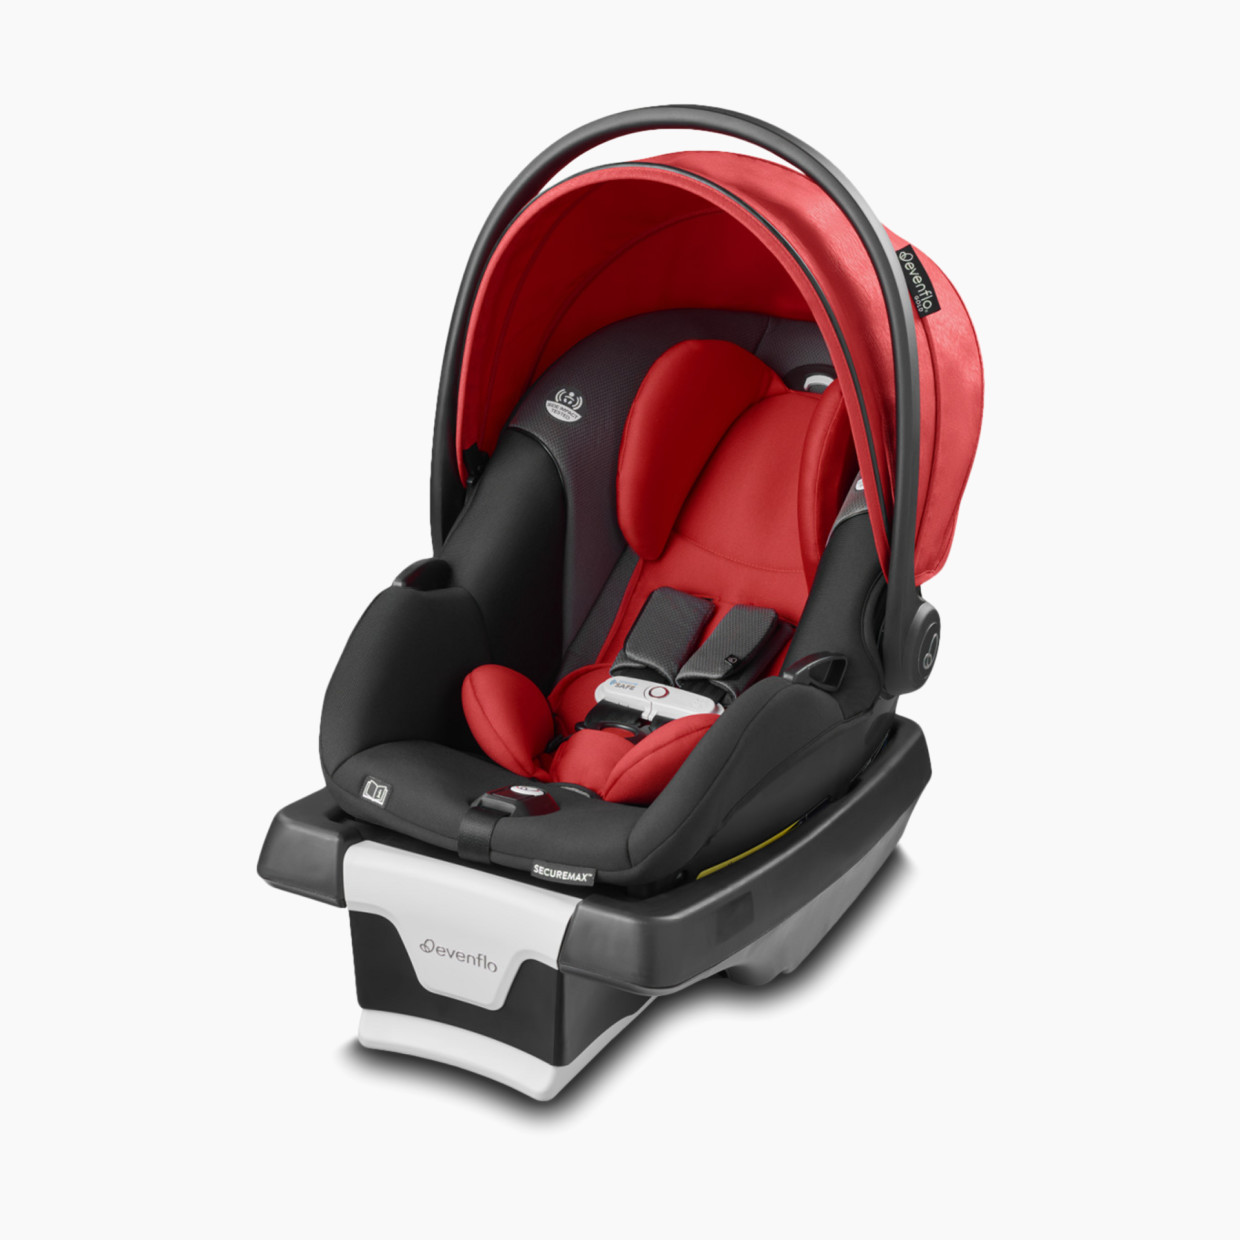 Evenflo Gold SecureMax Smart Infant Car Seat - Garnet Red.